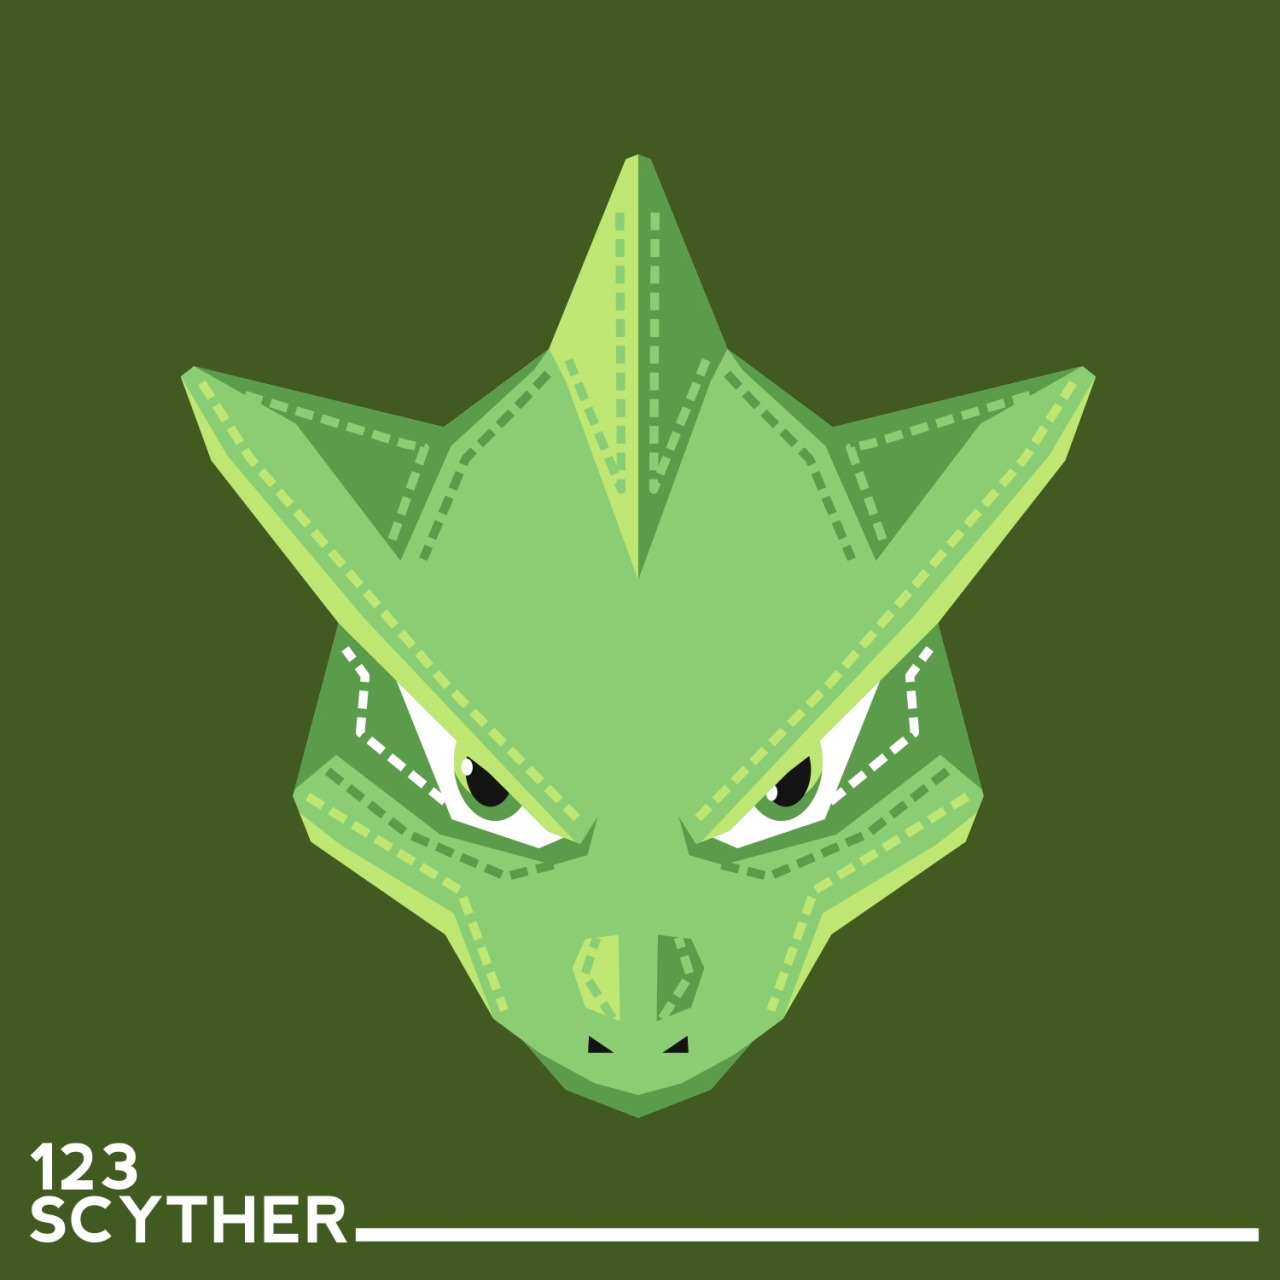 Scyther - #123 -  Pokédex